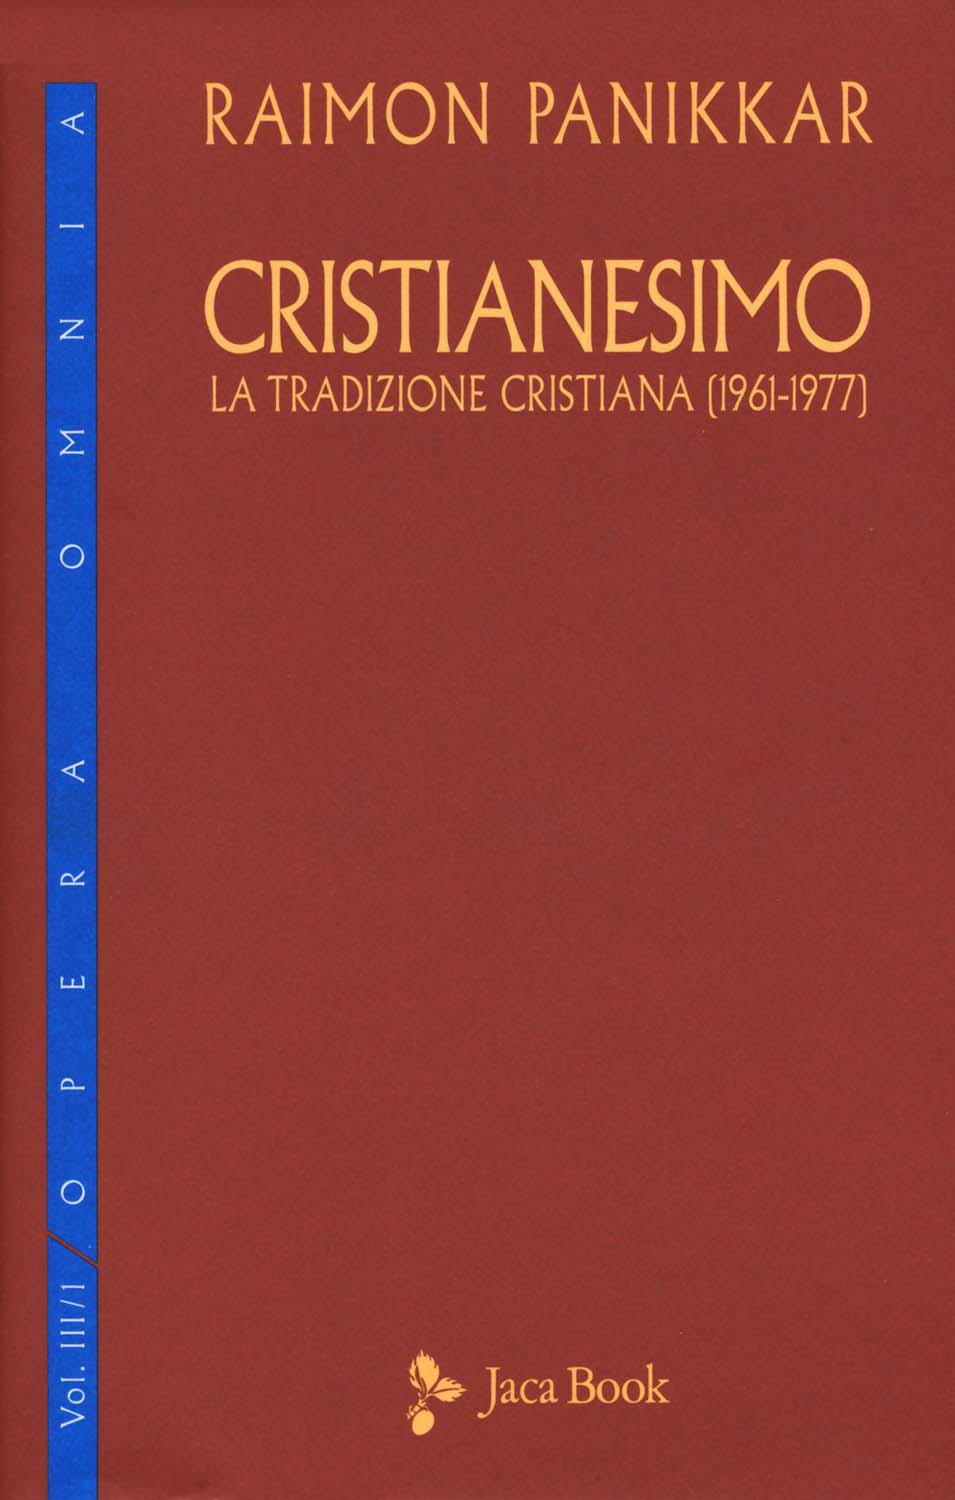 Libri Raimon Panikkar - Cristianesimo. La Tradizione Cristiana (1961-1977) NUOVO SIGILLATO, EDIZIONE DEL 08/10/2015 SUBITO DISPONIBILE